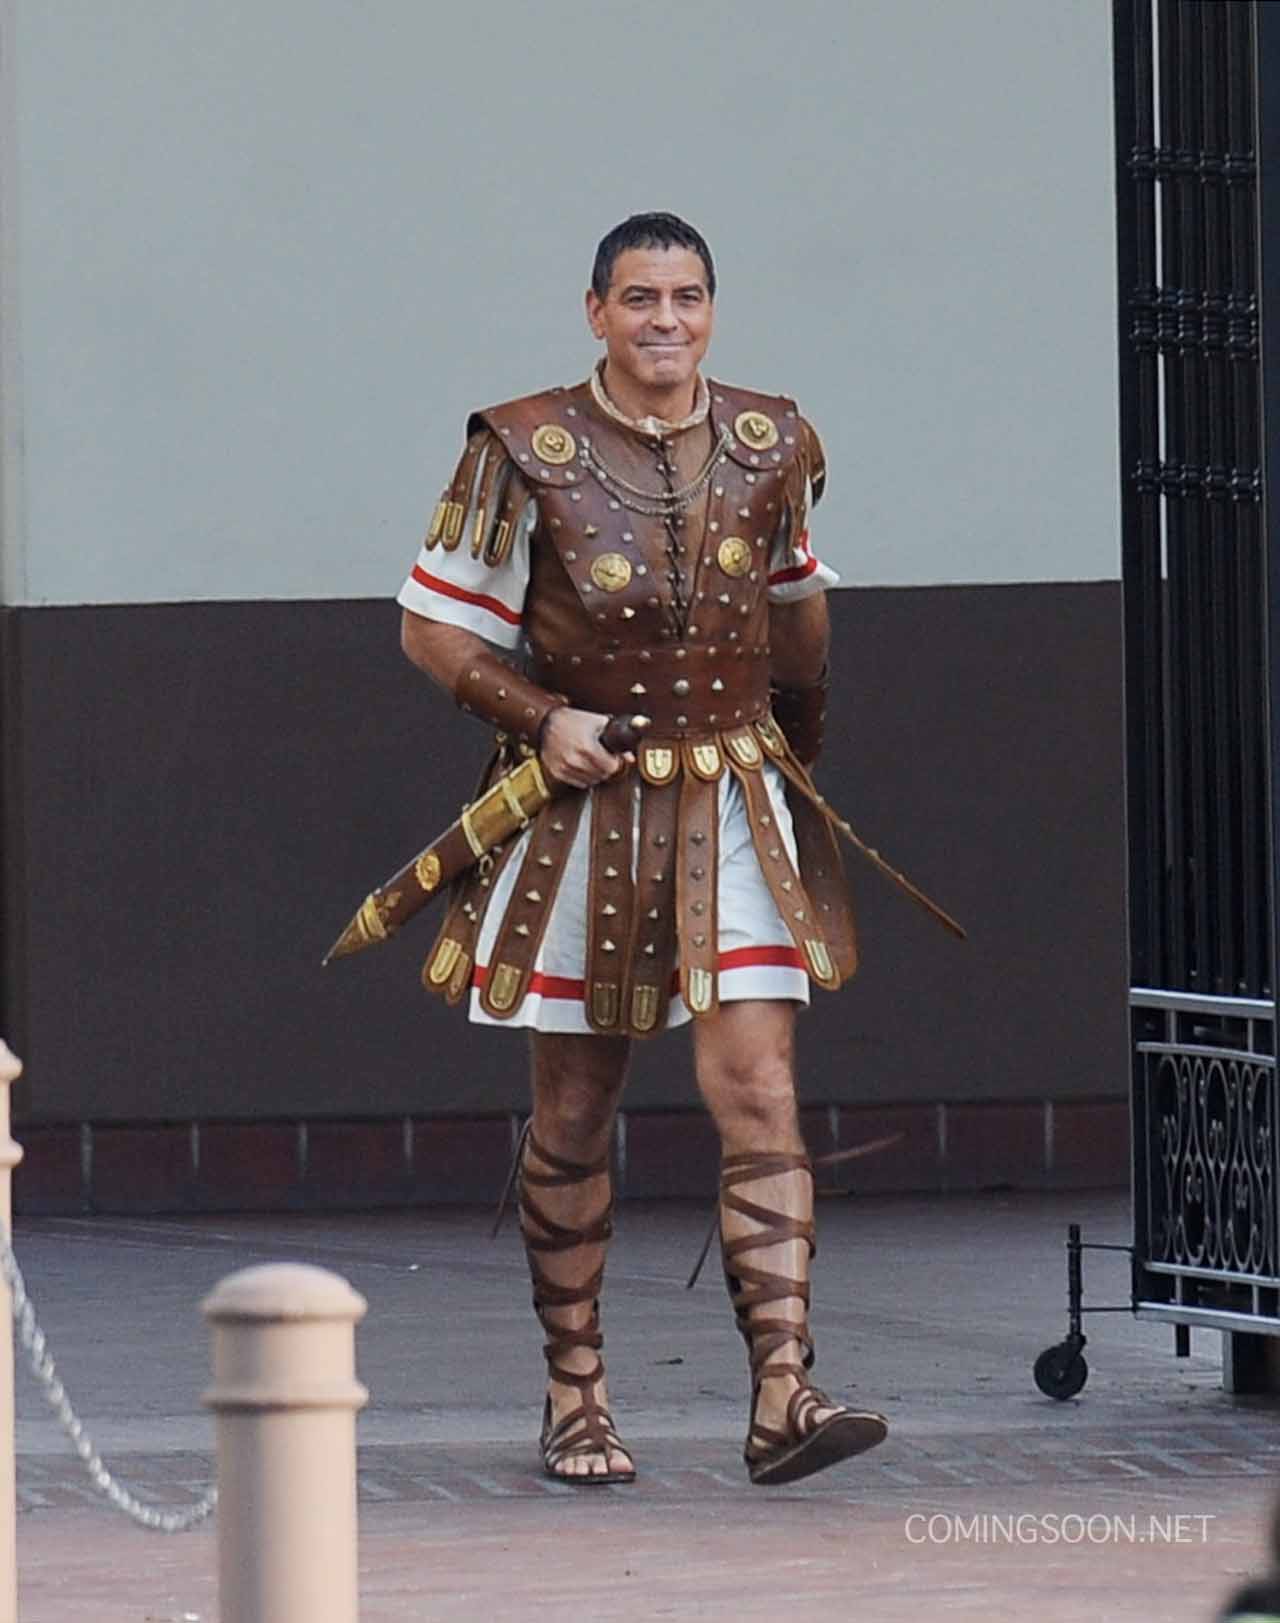 Hail, Caesar! Set